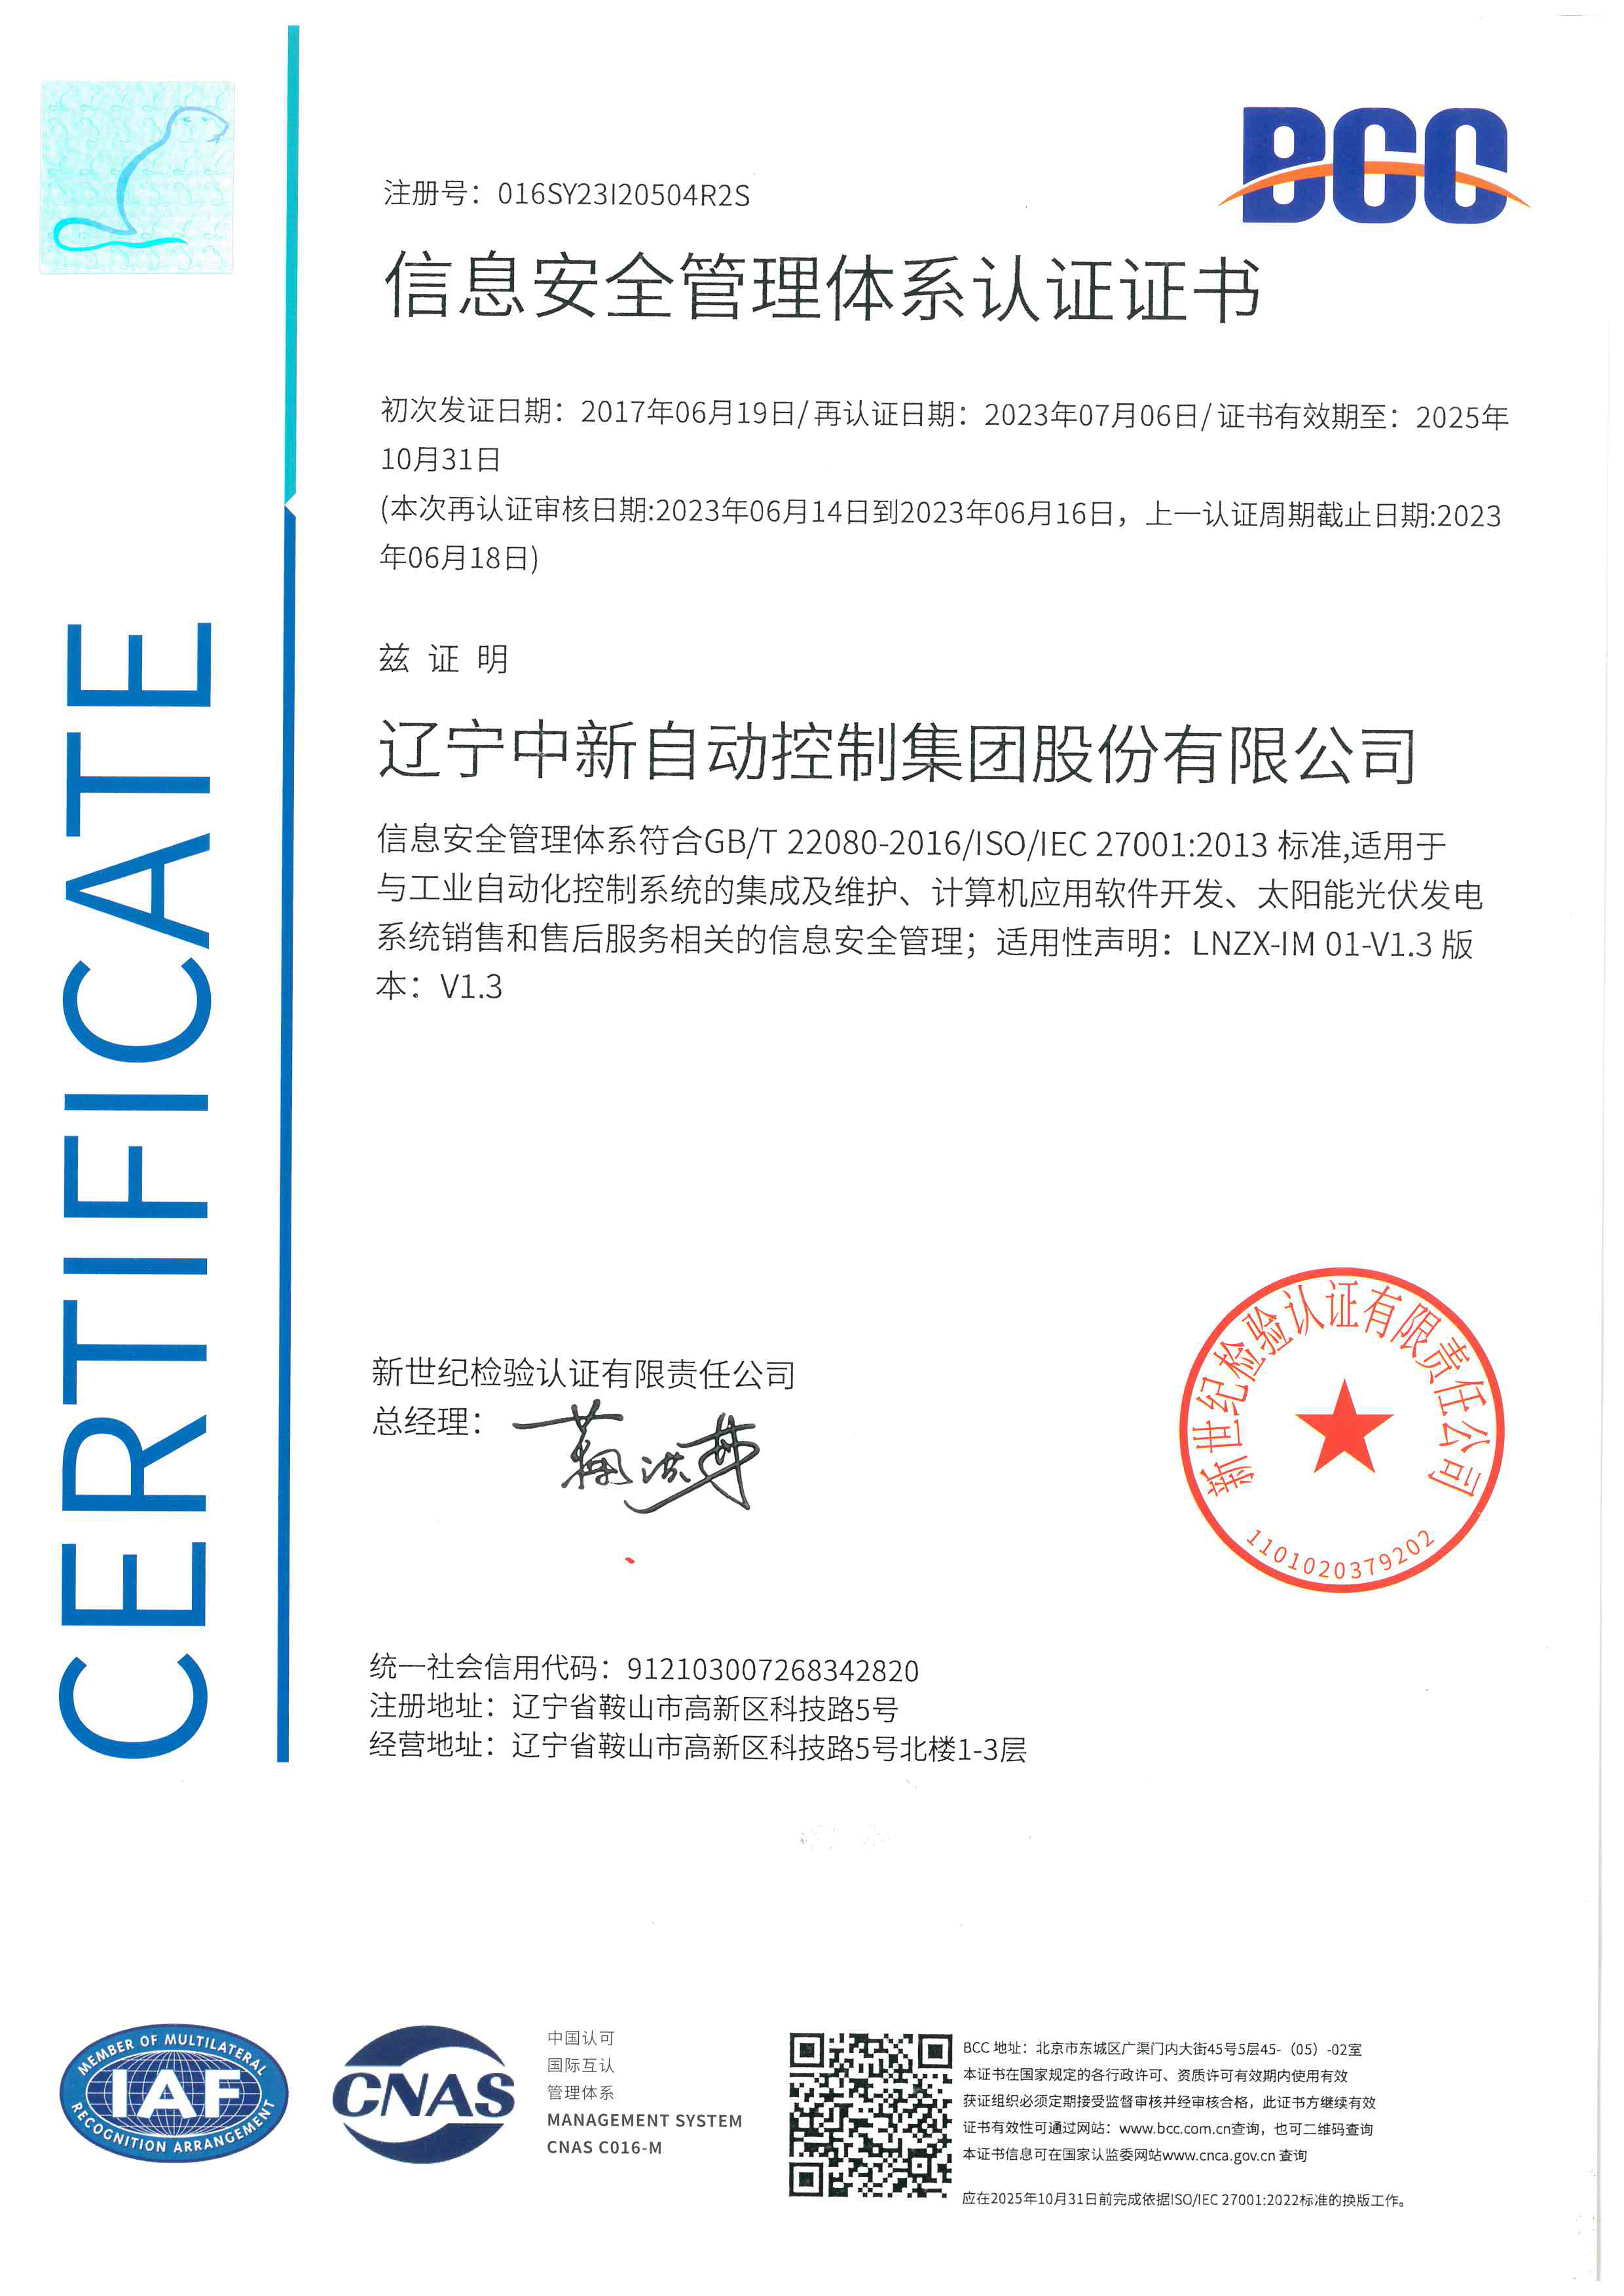 信息安全管理体系认证-中文-资质证书-辽宁中新